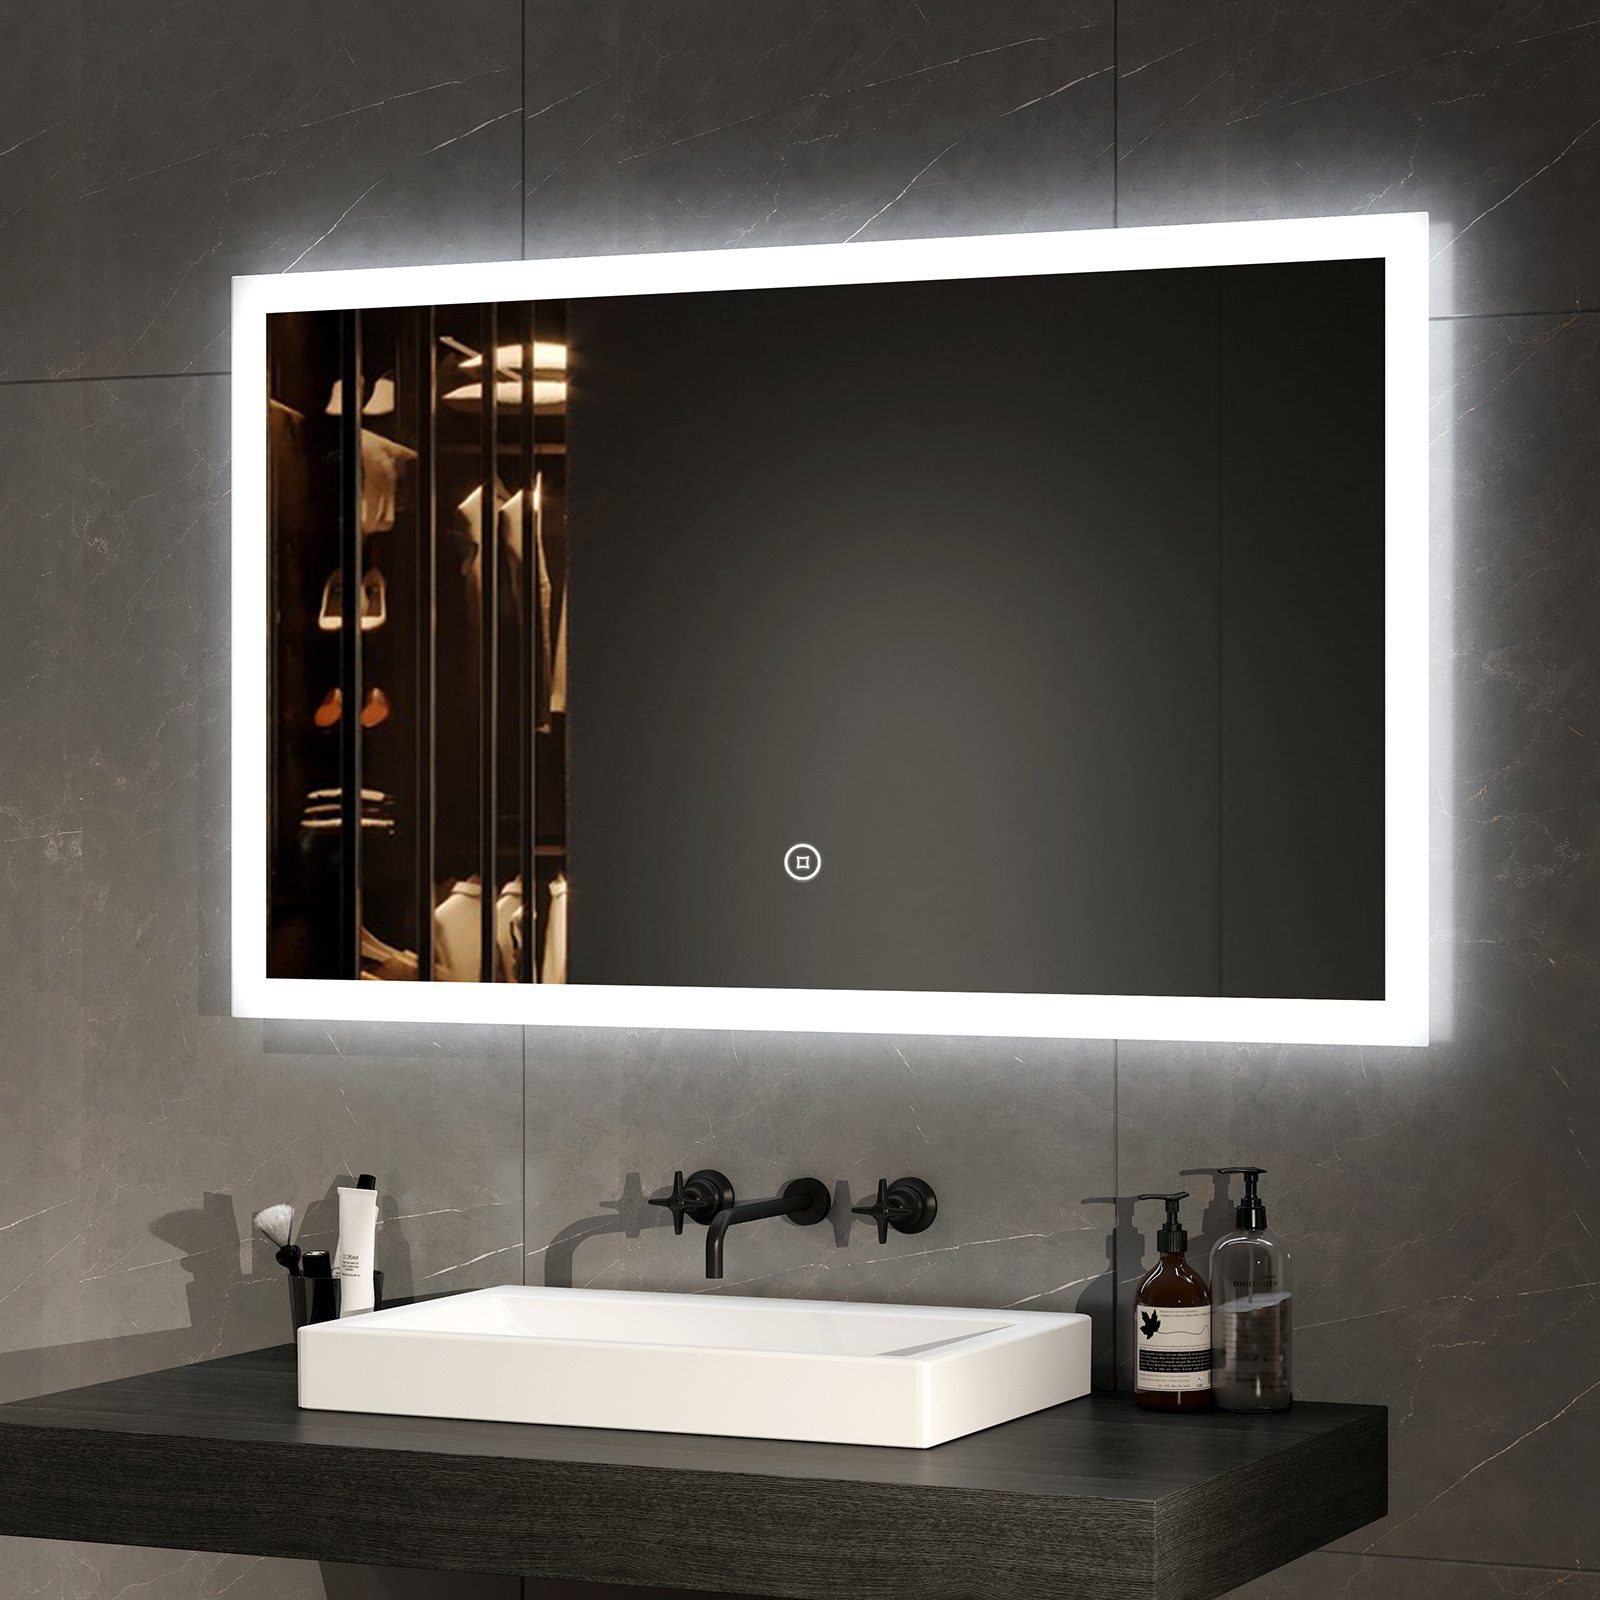 EMKE Badspiegel LED Wandspiegel 100x60cm Badezimmerspiegel (100x60cm, Touch Schalter, Vertikal und Horizontal möglich), mit Warmweiß/Kaltweiß/Natürliches Licht und Touch-schalter IP44